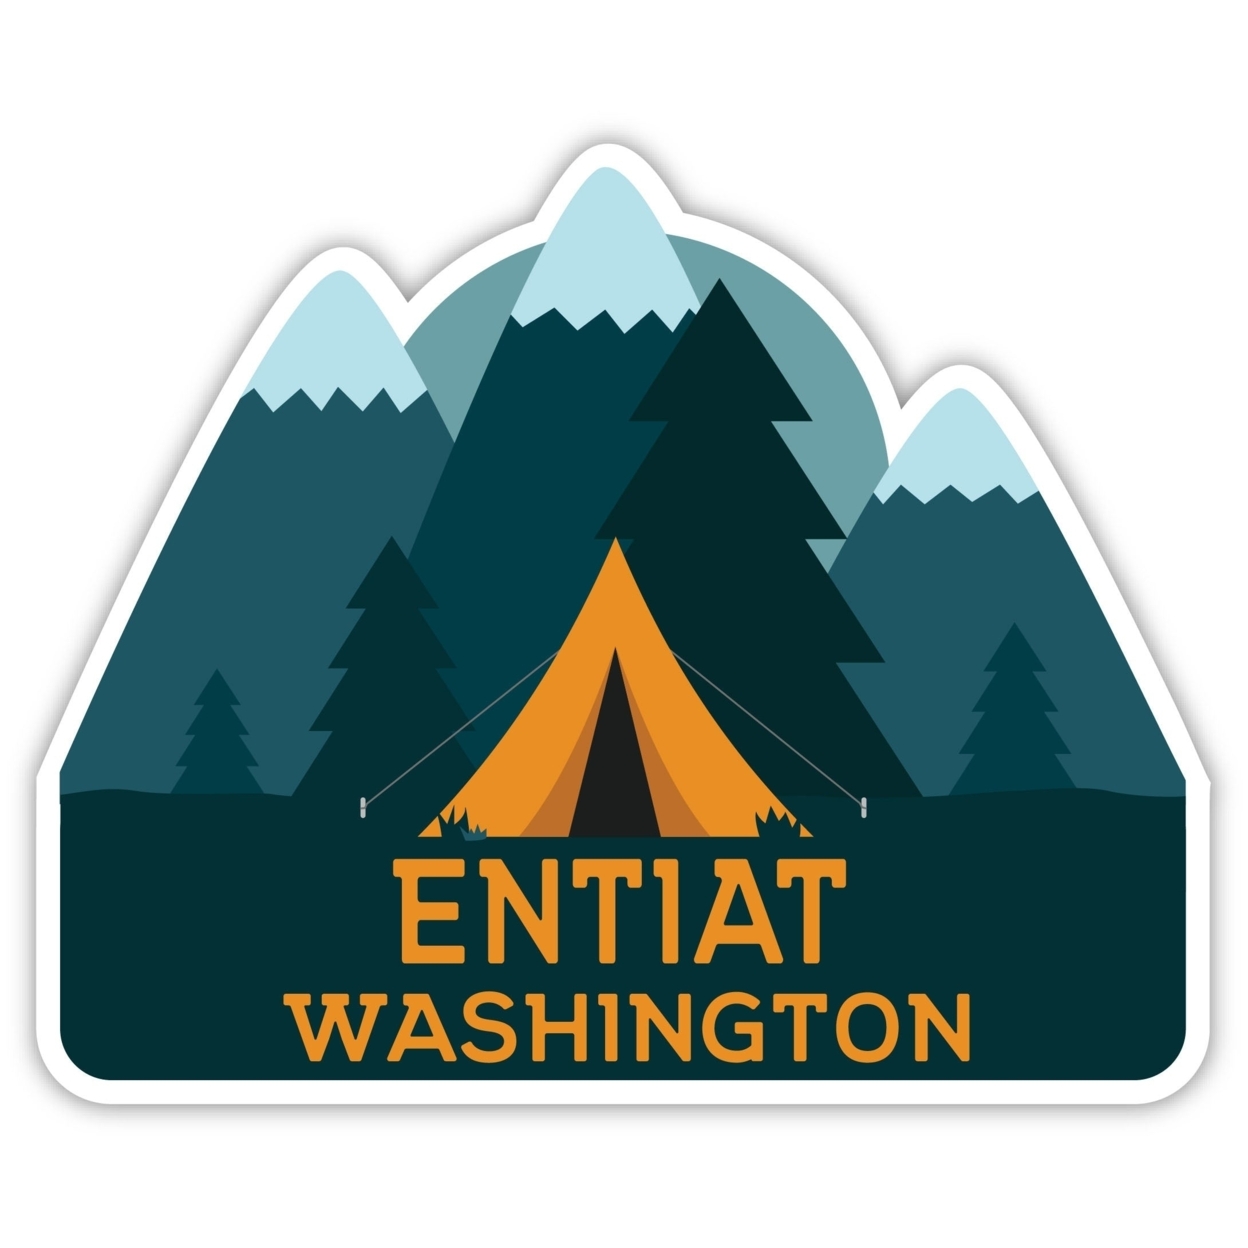 Entiat Washington Souvenir Decorative Stickers (Choose Theme And Size) - Single Unit, 6-Inch, Tent